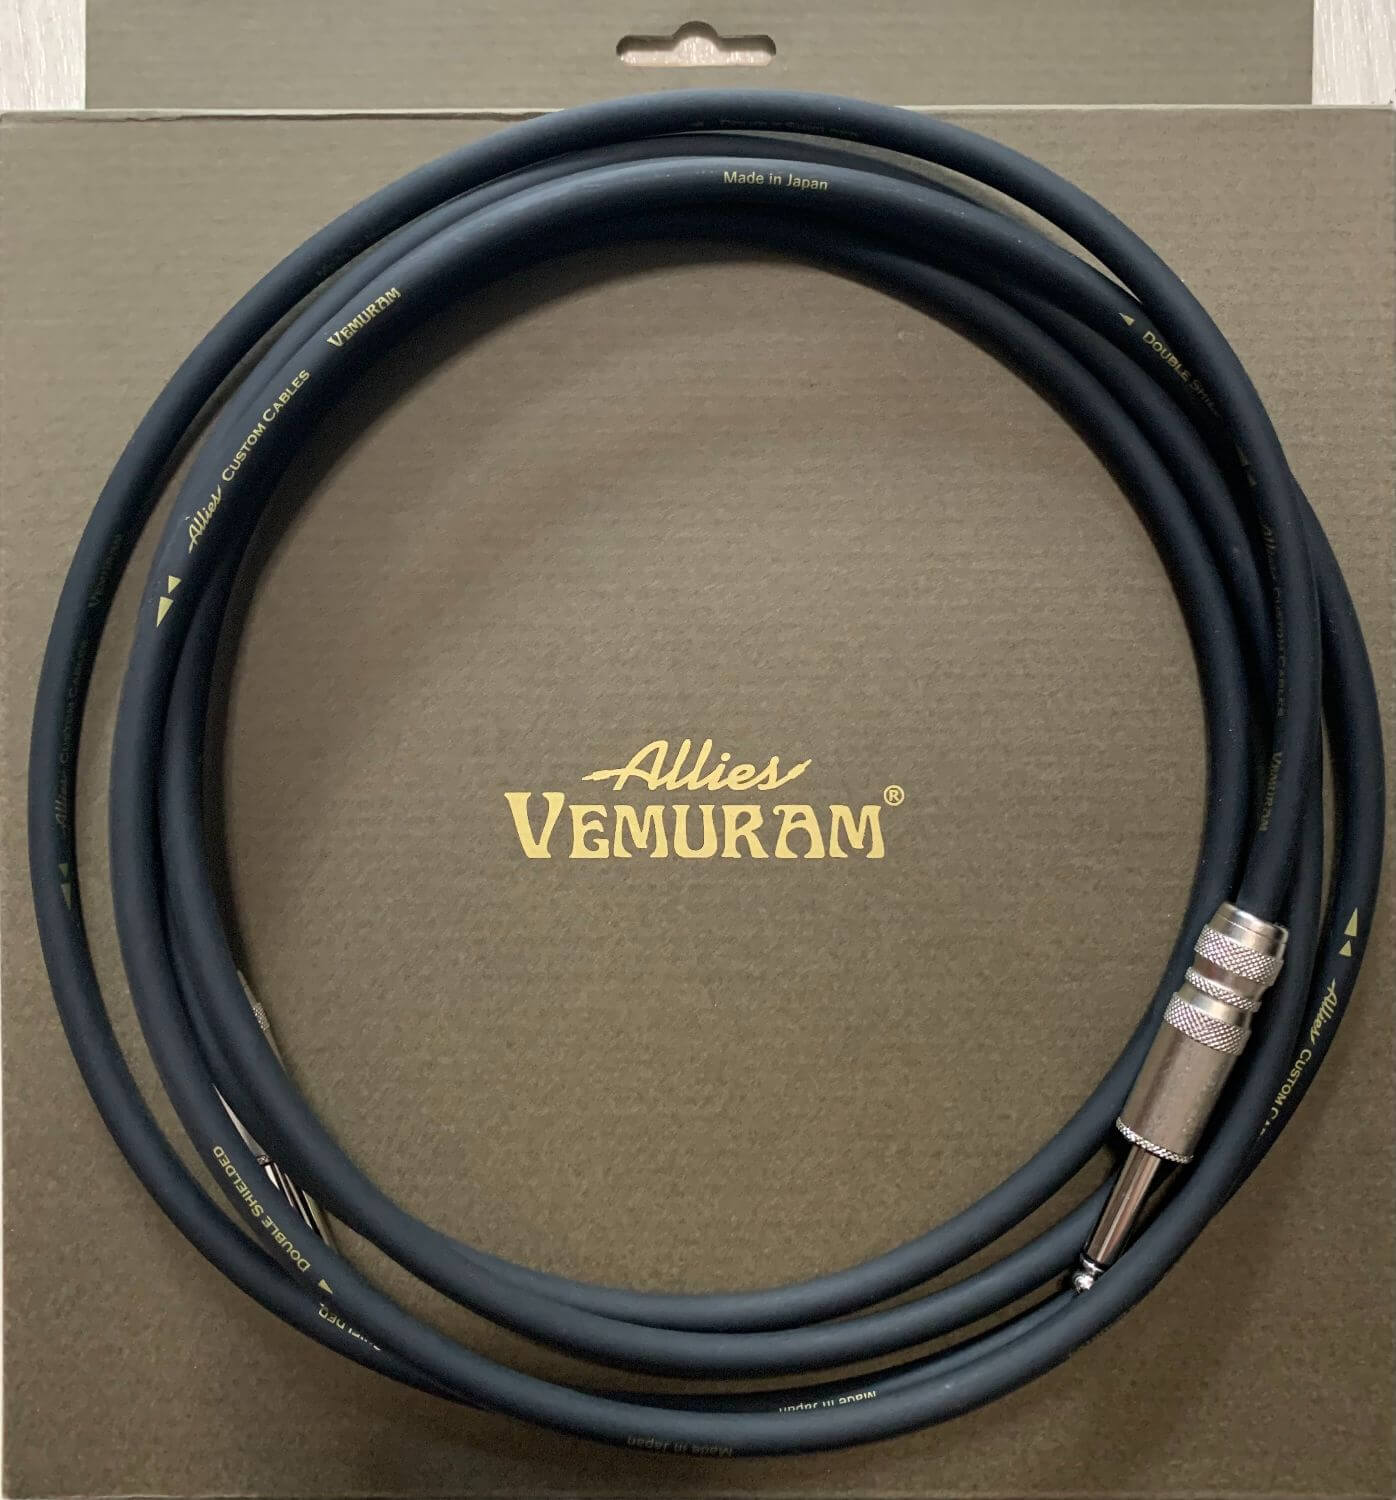 落ち着いたトーン】Allies Vemuram Allies Custom Cables and Plugs ...